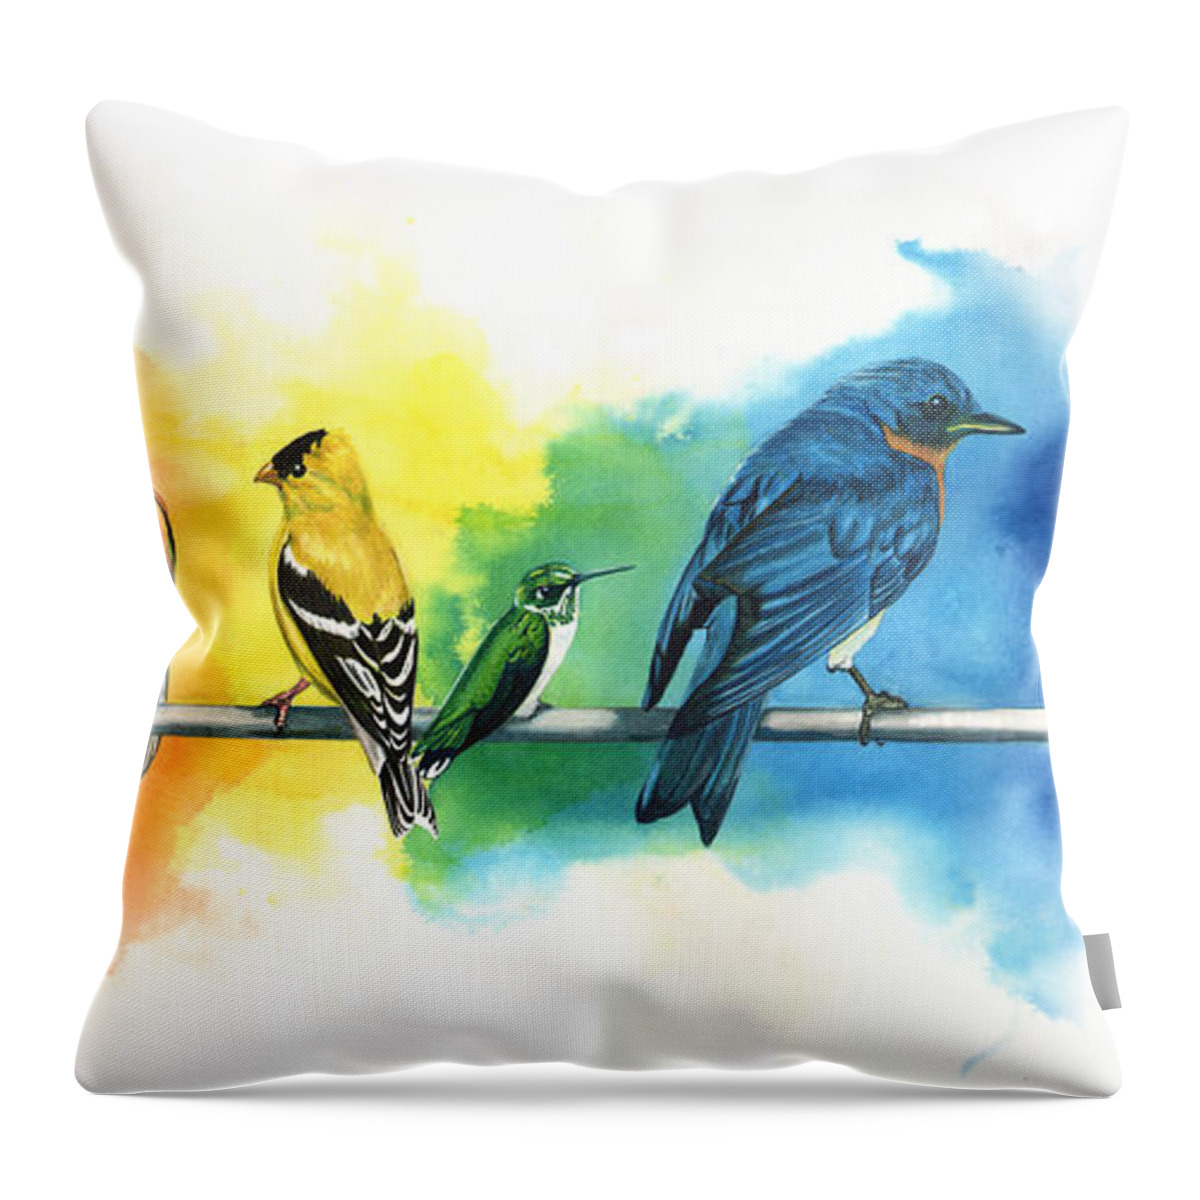 Rainbow Throw Pillow featuring the painting Rainbow Birds by Antony Galbraith